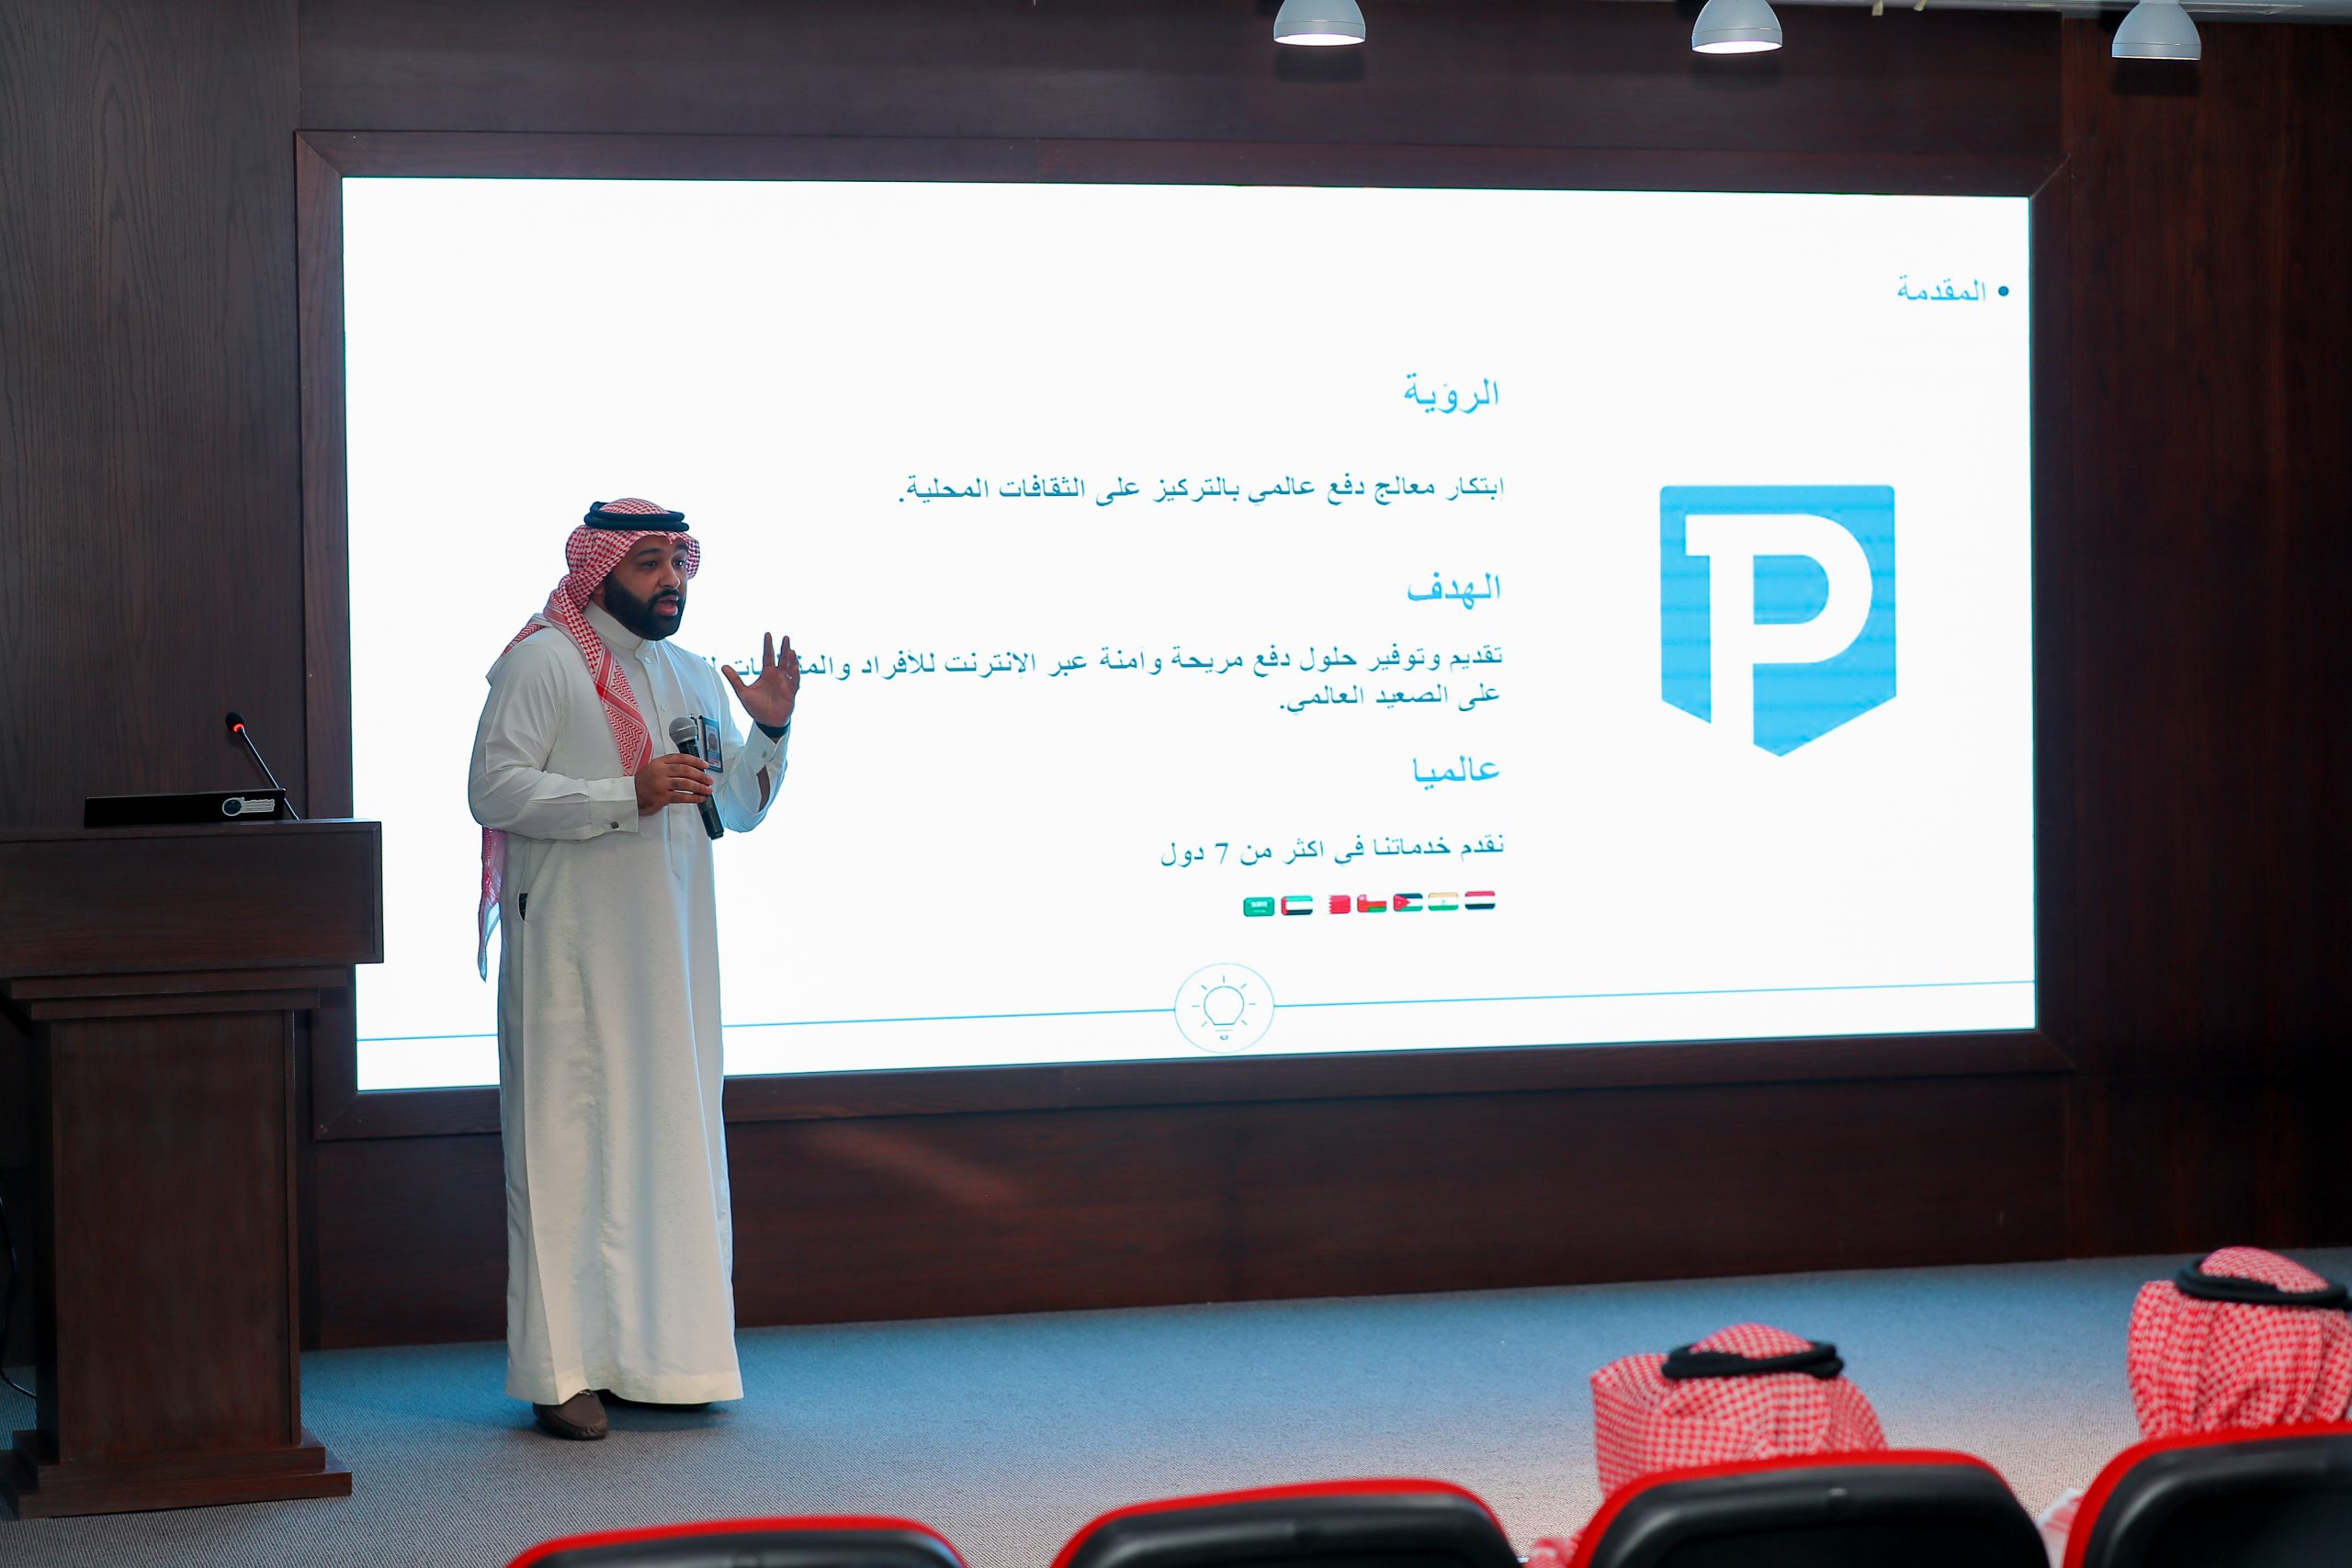 Fintech Tour 22 - Fintech Opportunities in Payments - Catch PayTabs Saudi GM Mohammed Abu Alsaud